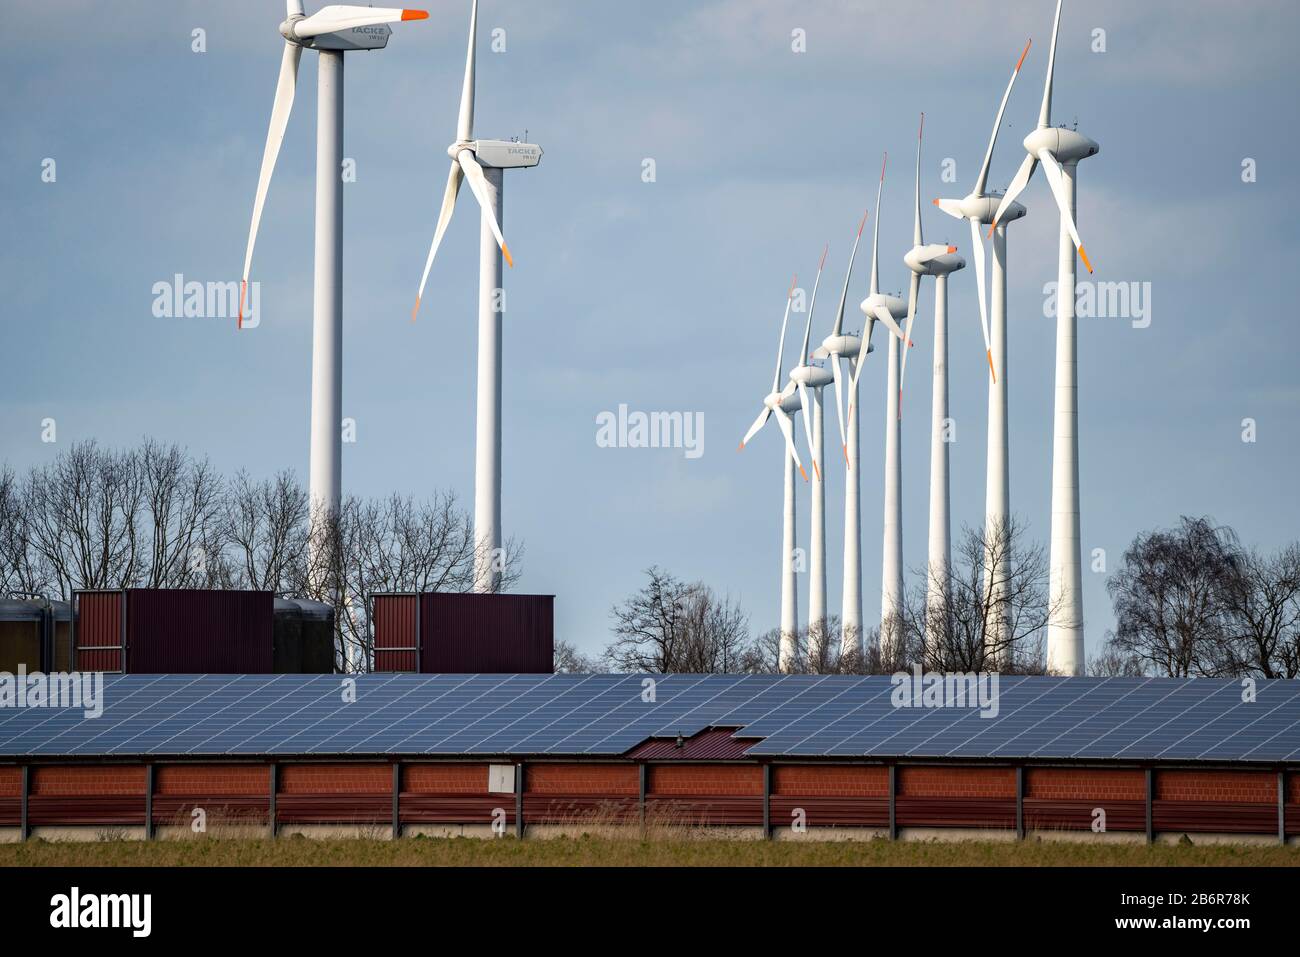 Windpark, Windkraftwerke, an der Autobahn A31, beim Ort Heede, in Niedersachsen, Emsland, Landwirtschaftlicher Betrieb mit Photovoltaik Anlagen auf de Stock Photo